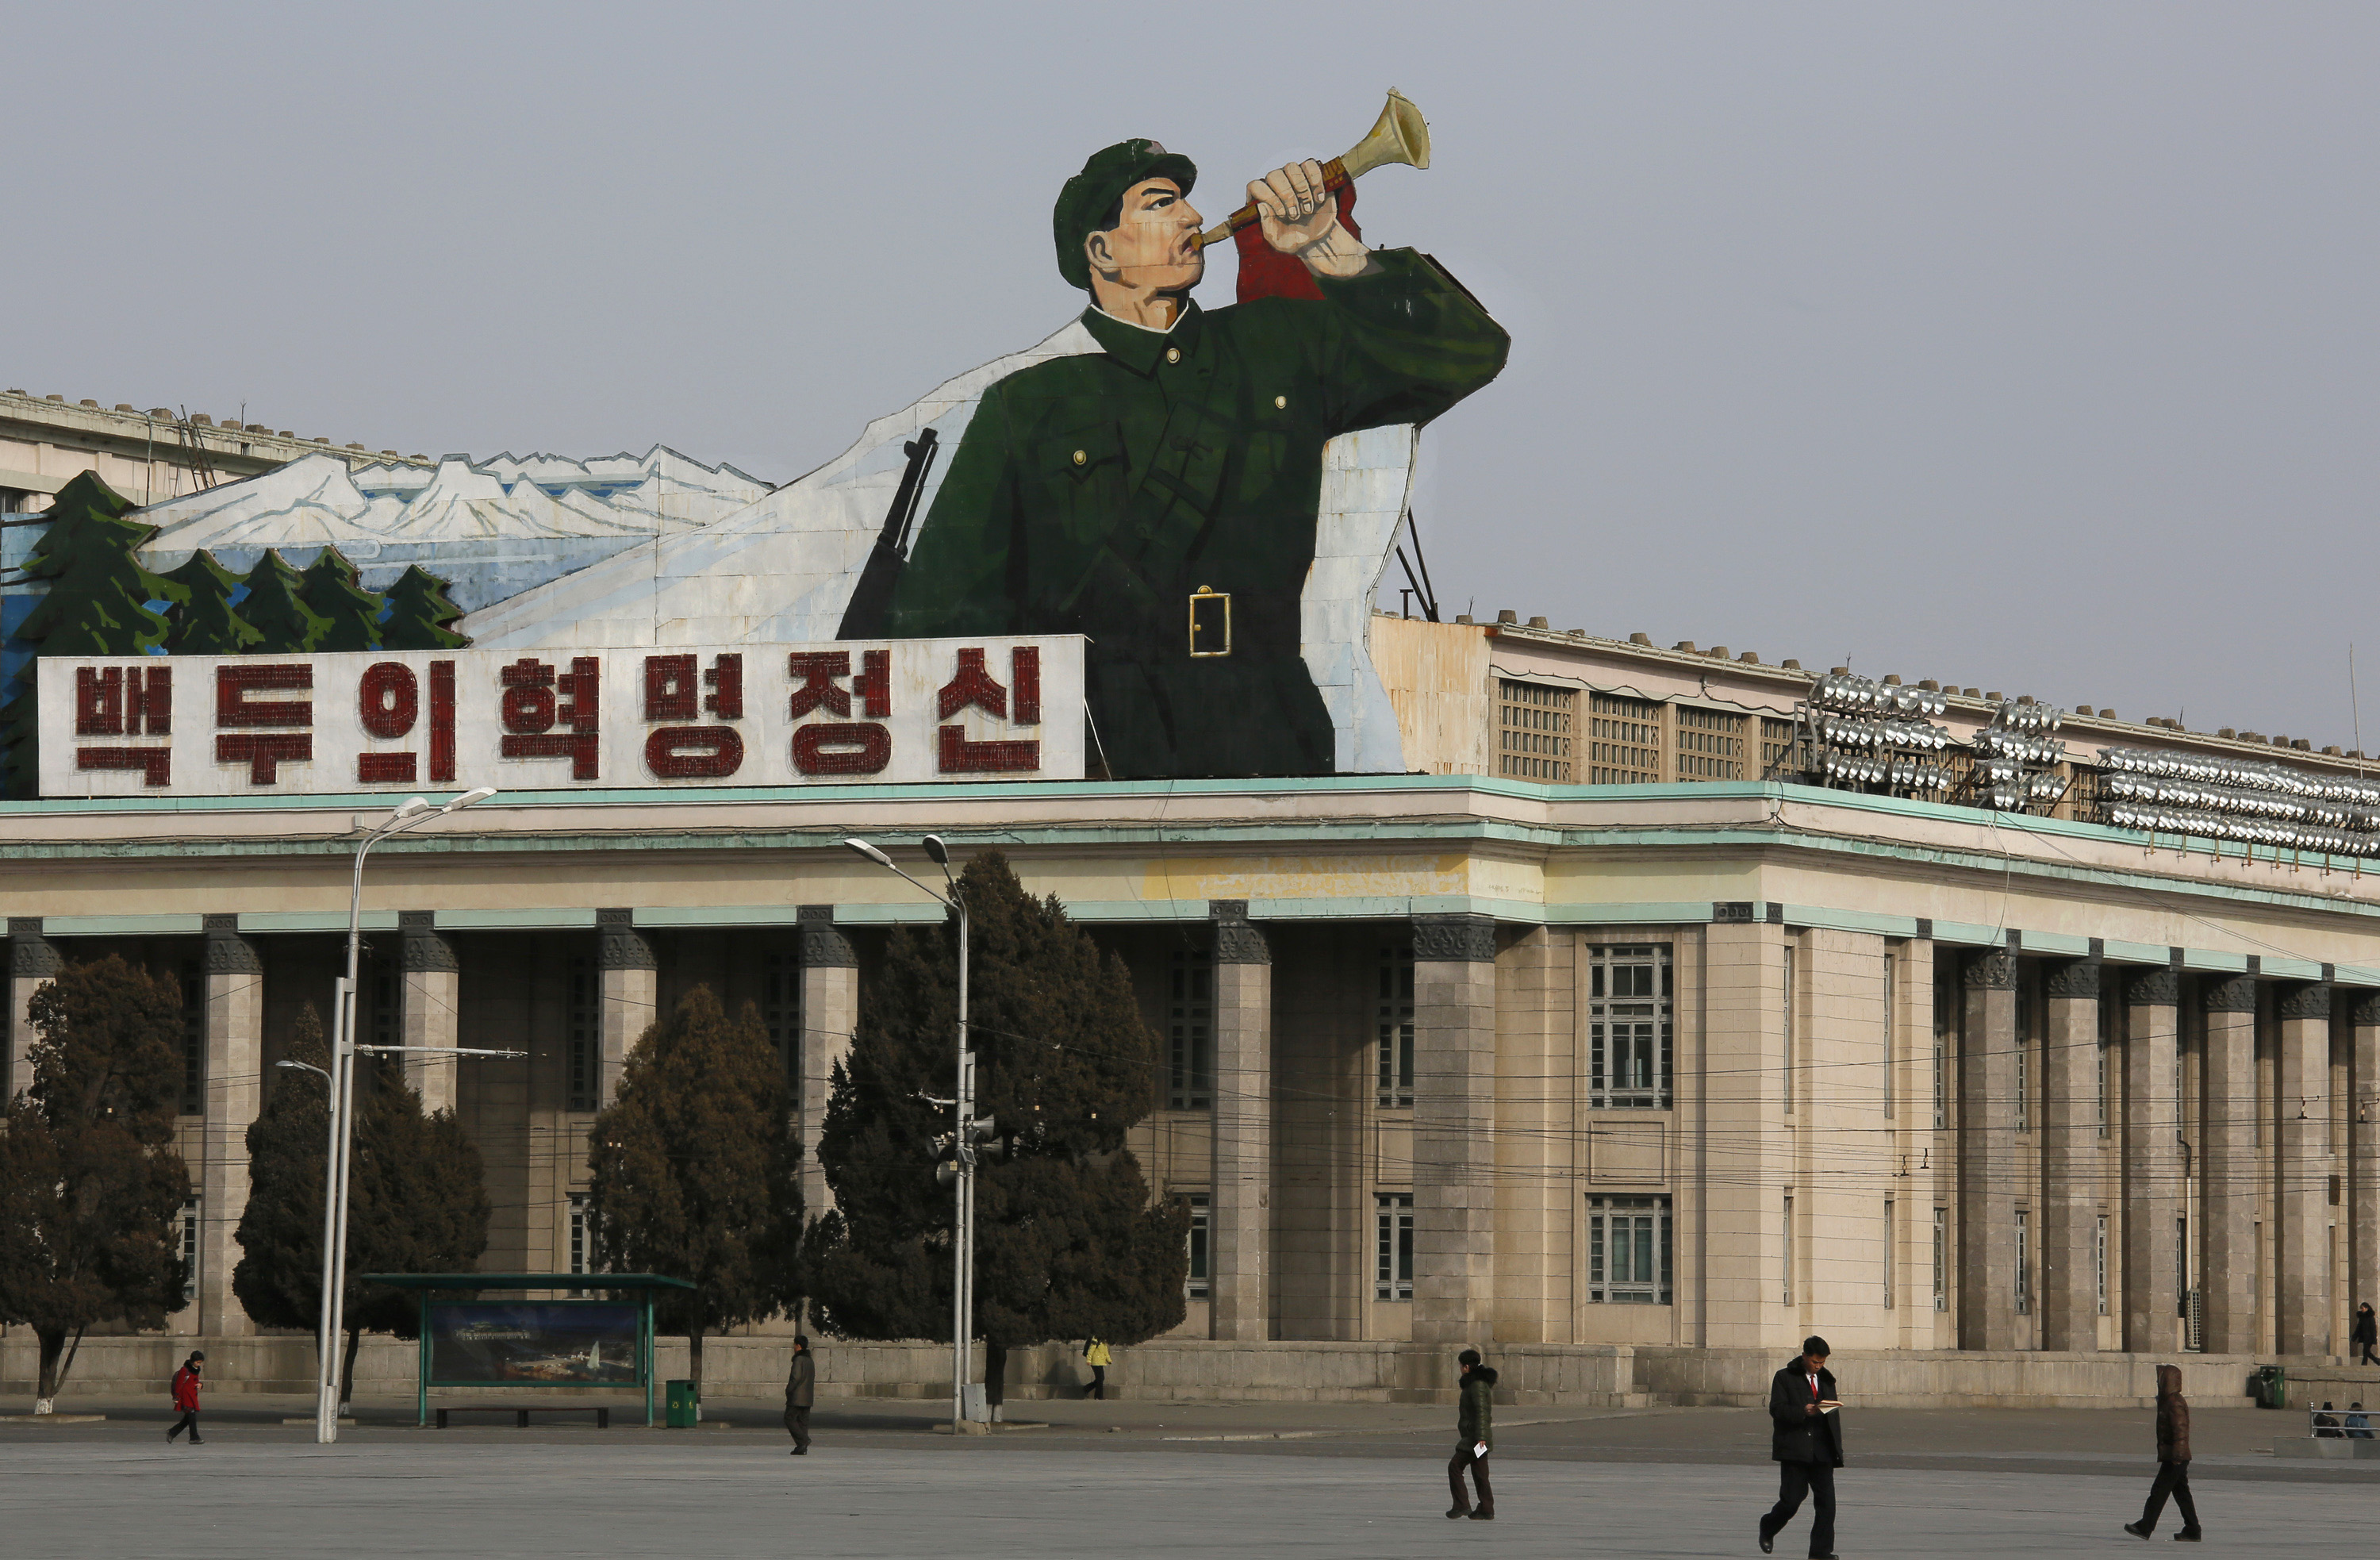 Η Κίνα στηρίζει την Βόρεια Κορέα μετά την έκθεση-κόλαφο του ΟΗΕ